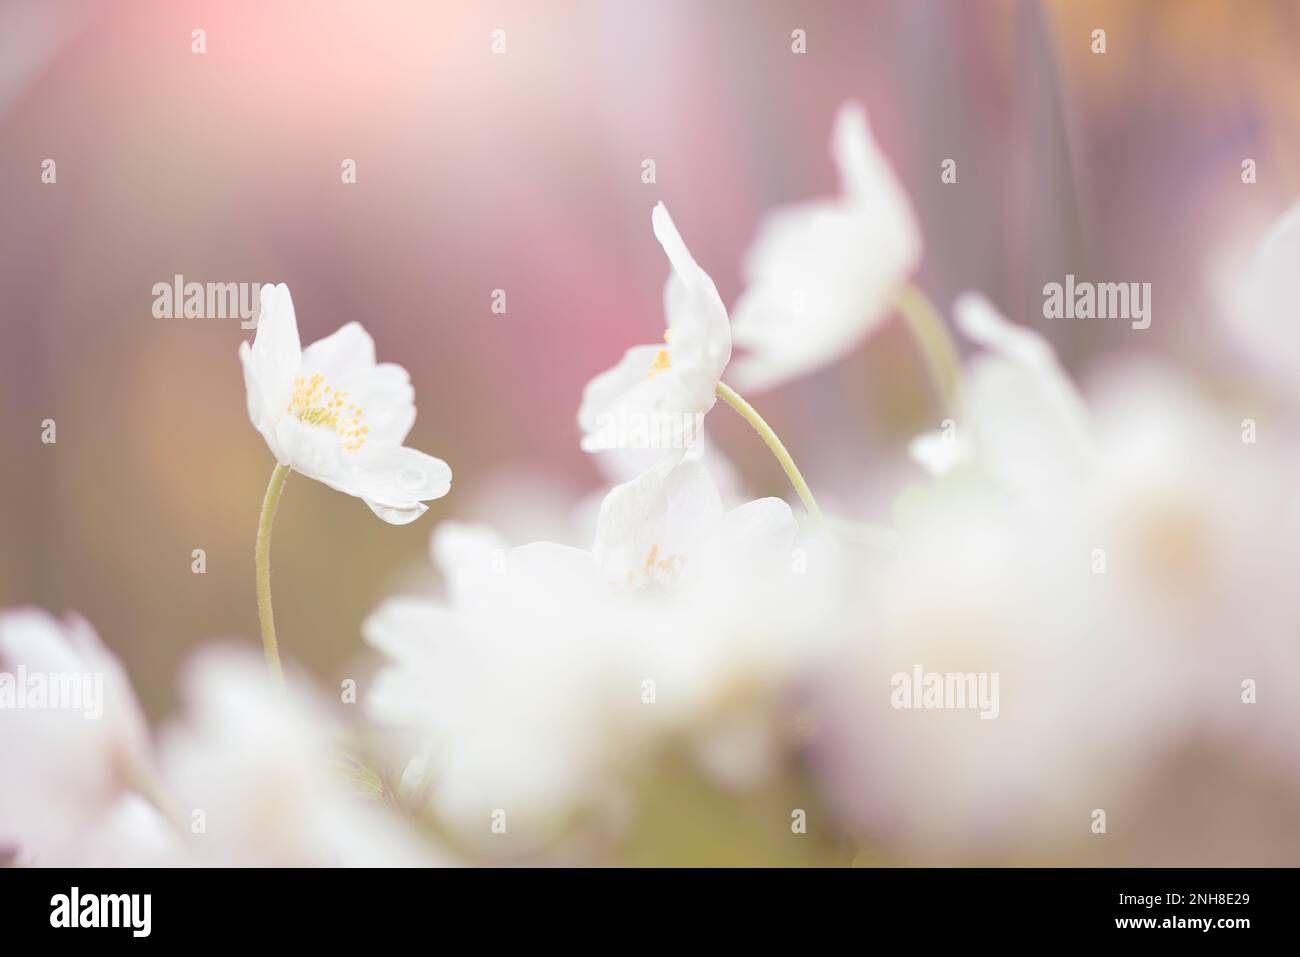 Les anémones de bois (Anemone nemorosa) fleurissent au printemps dans le fond de la forêt. Mise au point sélective et faible profondeur de champ. Banque D'Images